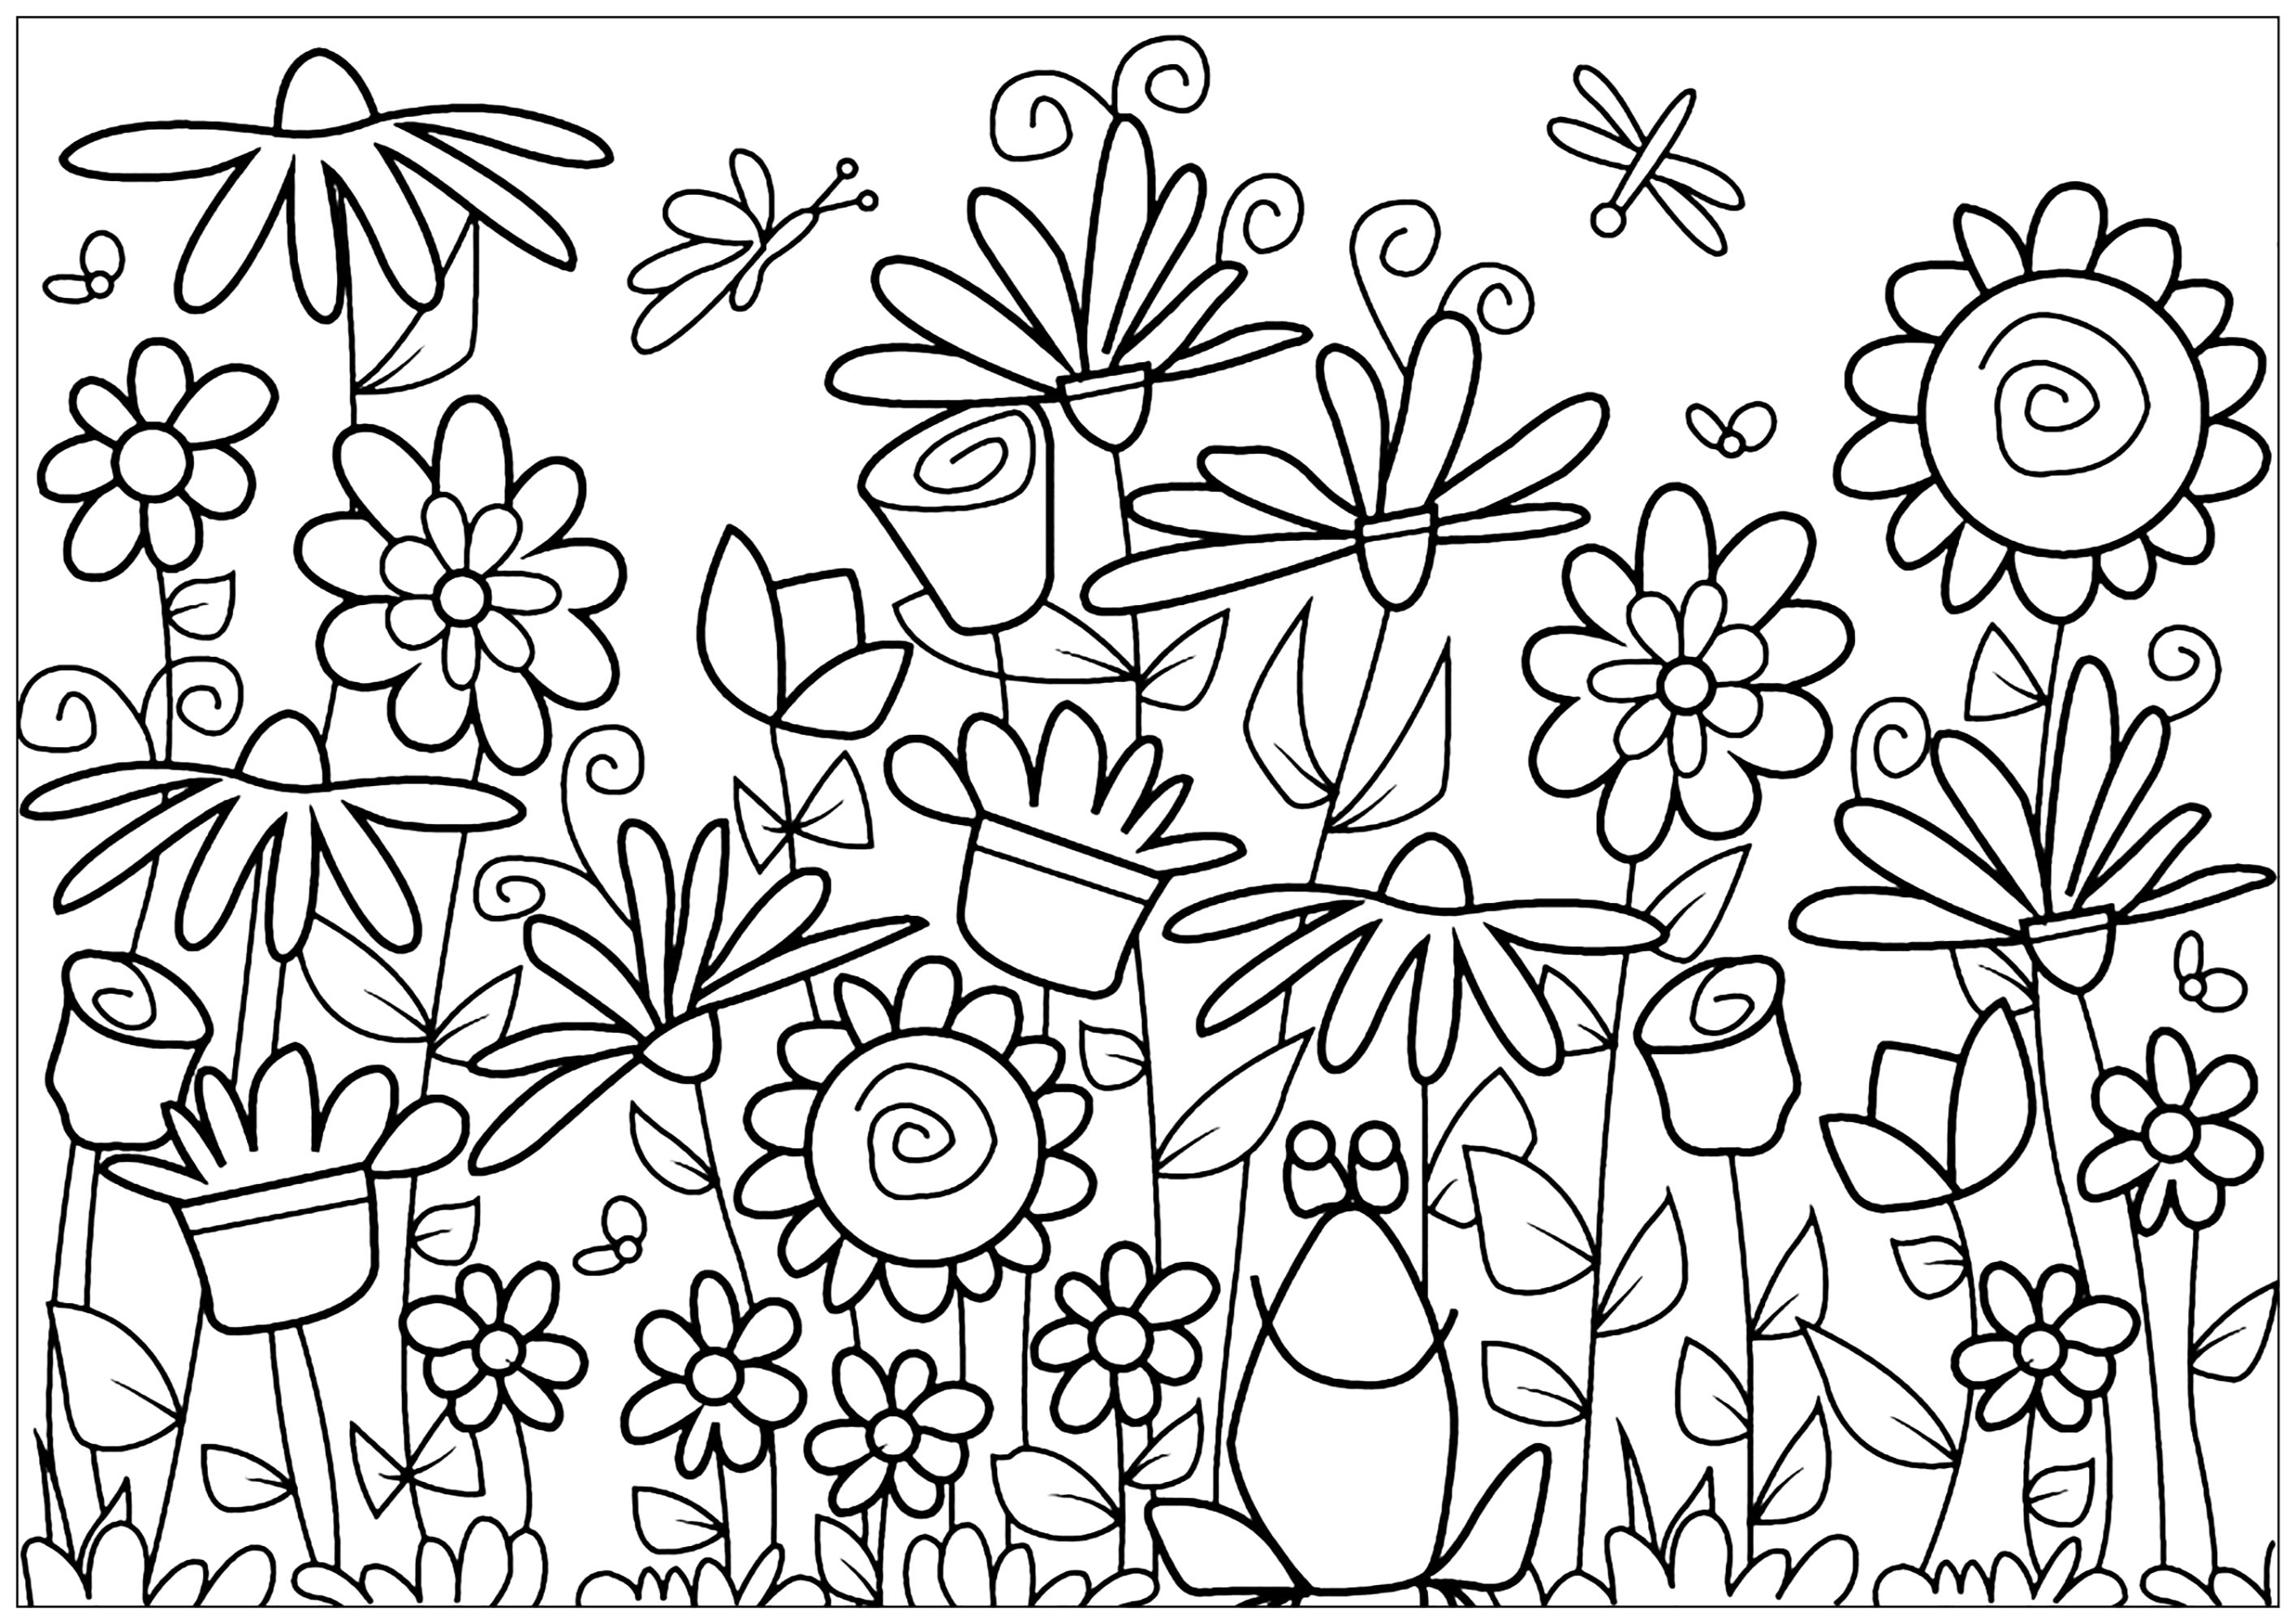 Página para colorir com girassóis gigantes, borboletas, margaridas e tulipas à volta de uma rã, Artista : Lucie